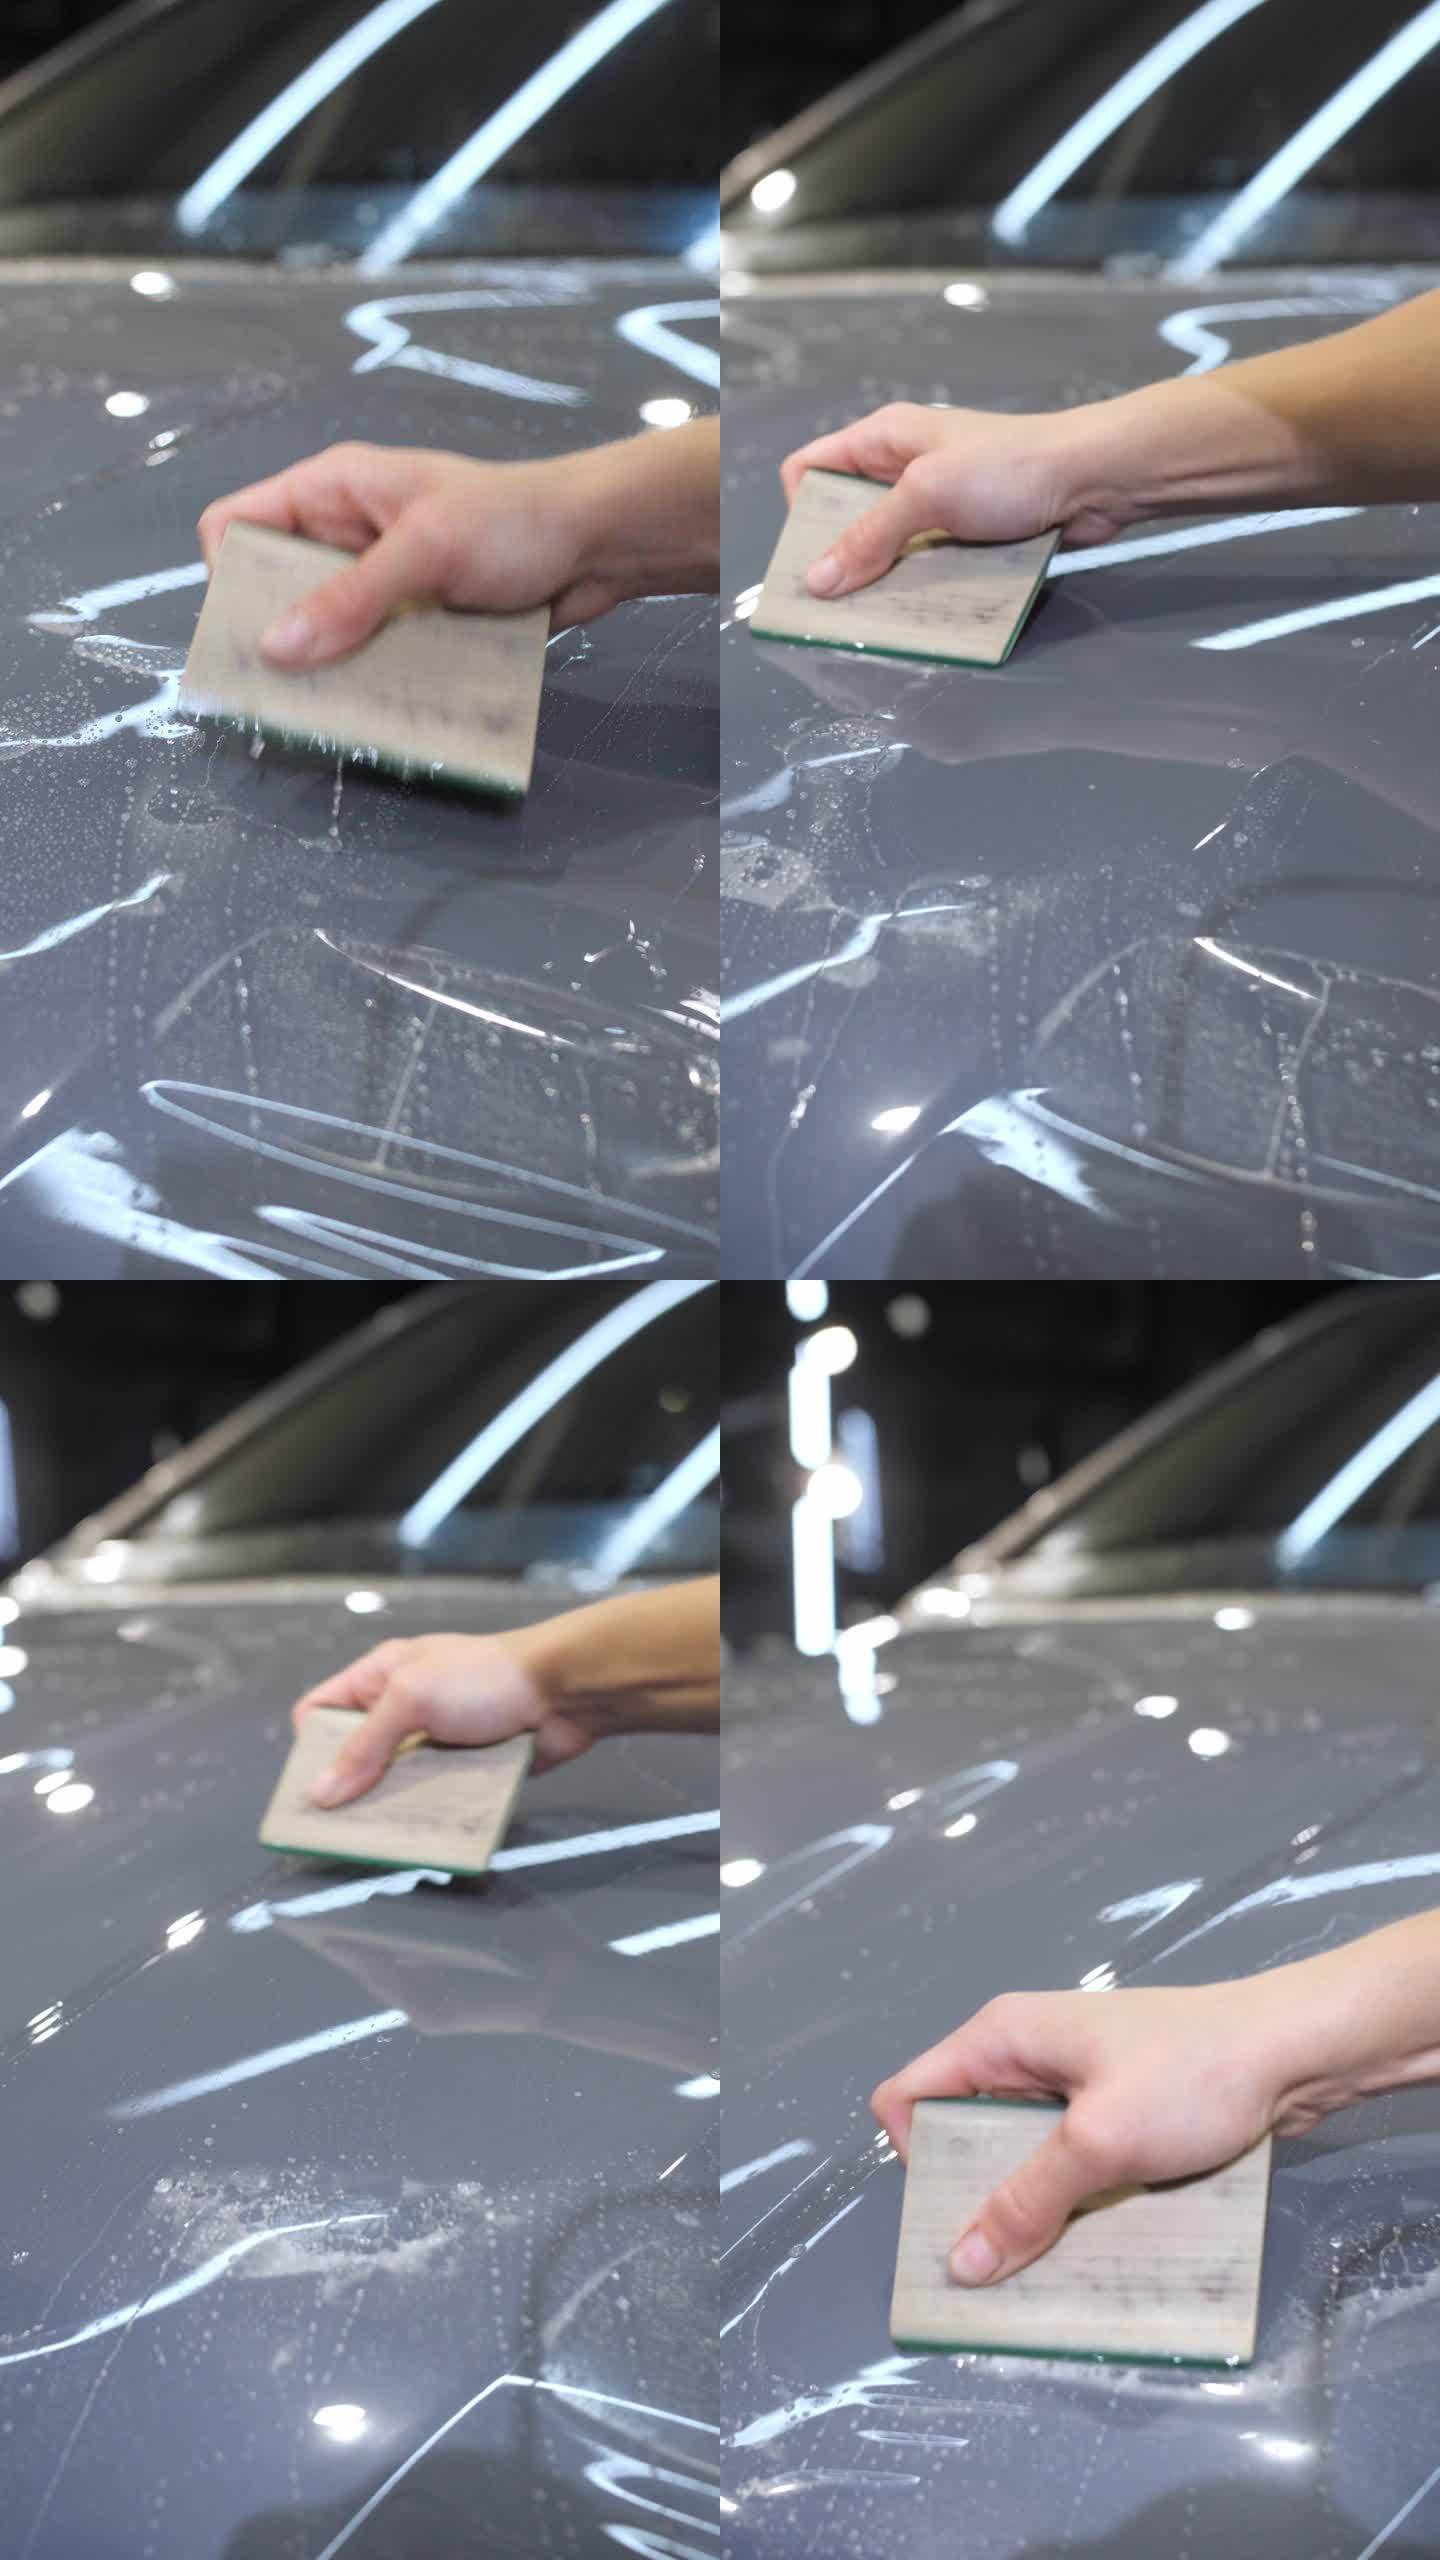 一只手拿着塑料刮板在新车上涂上了一层防砾石保护膜